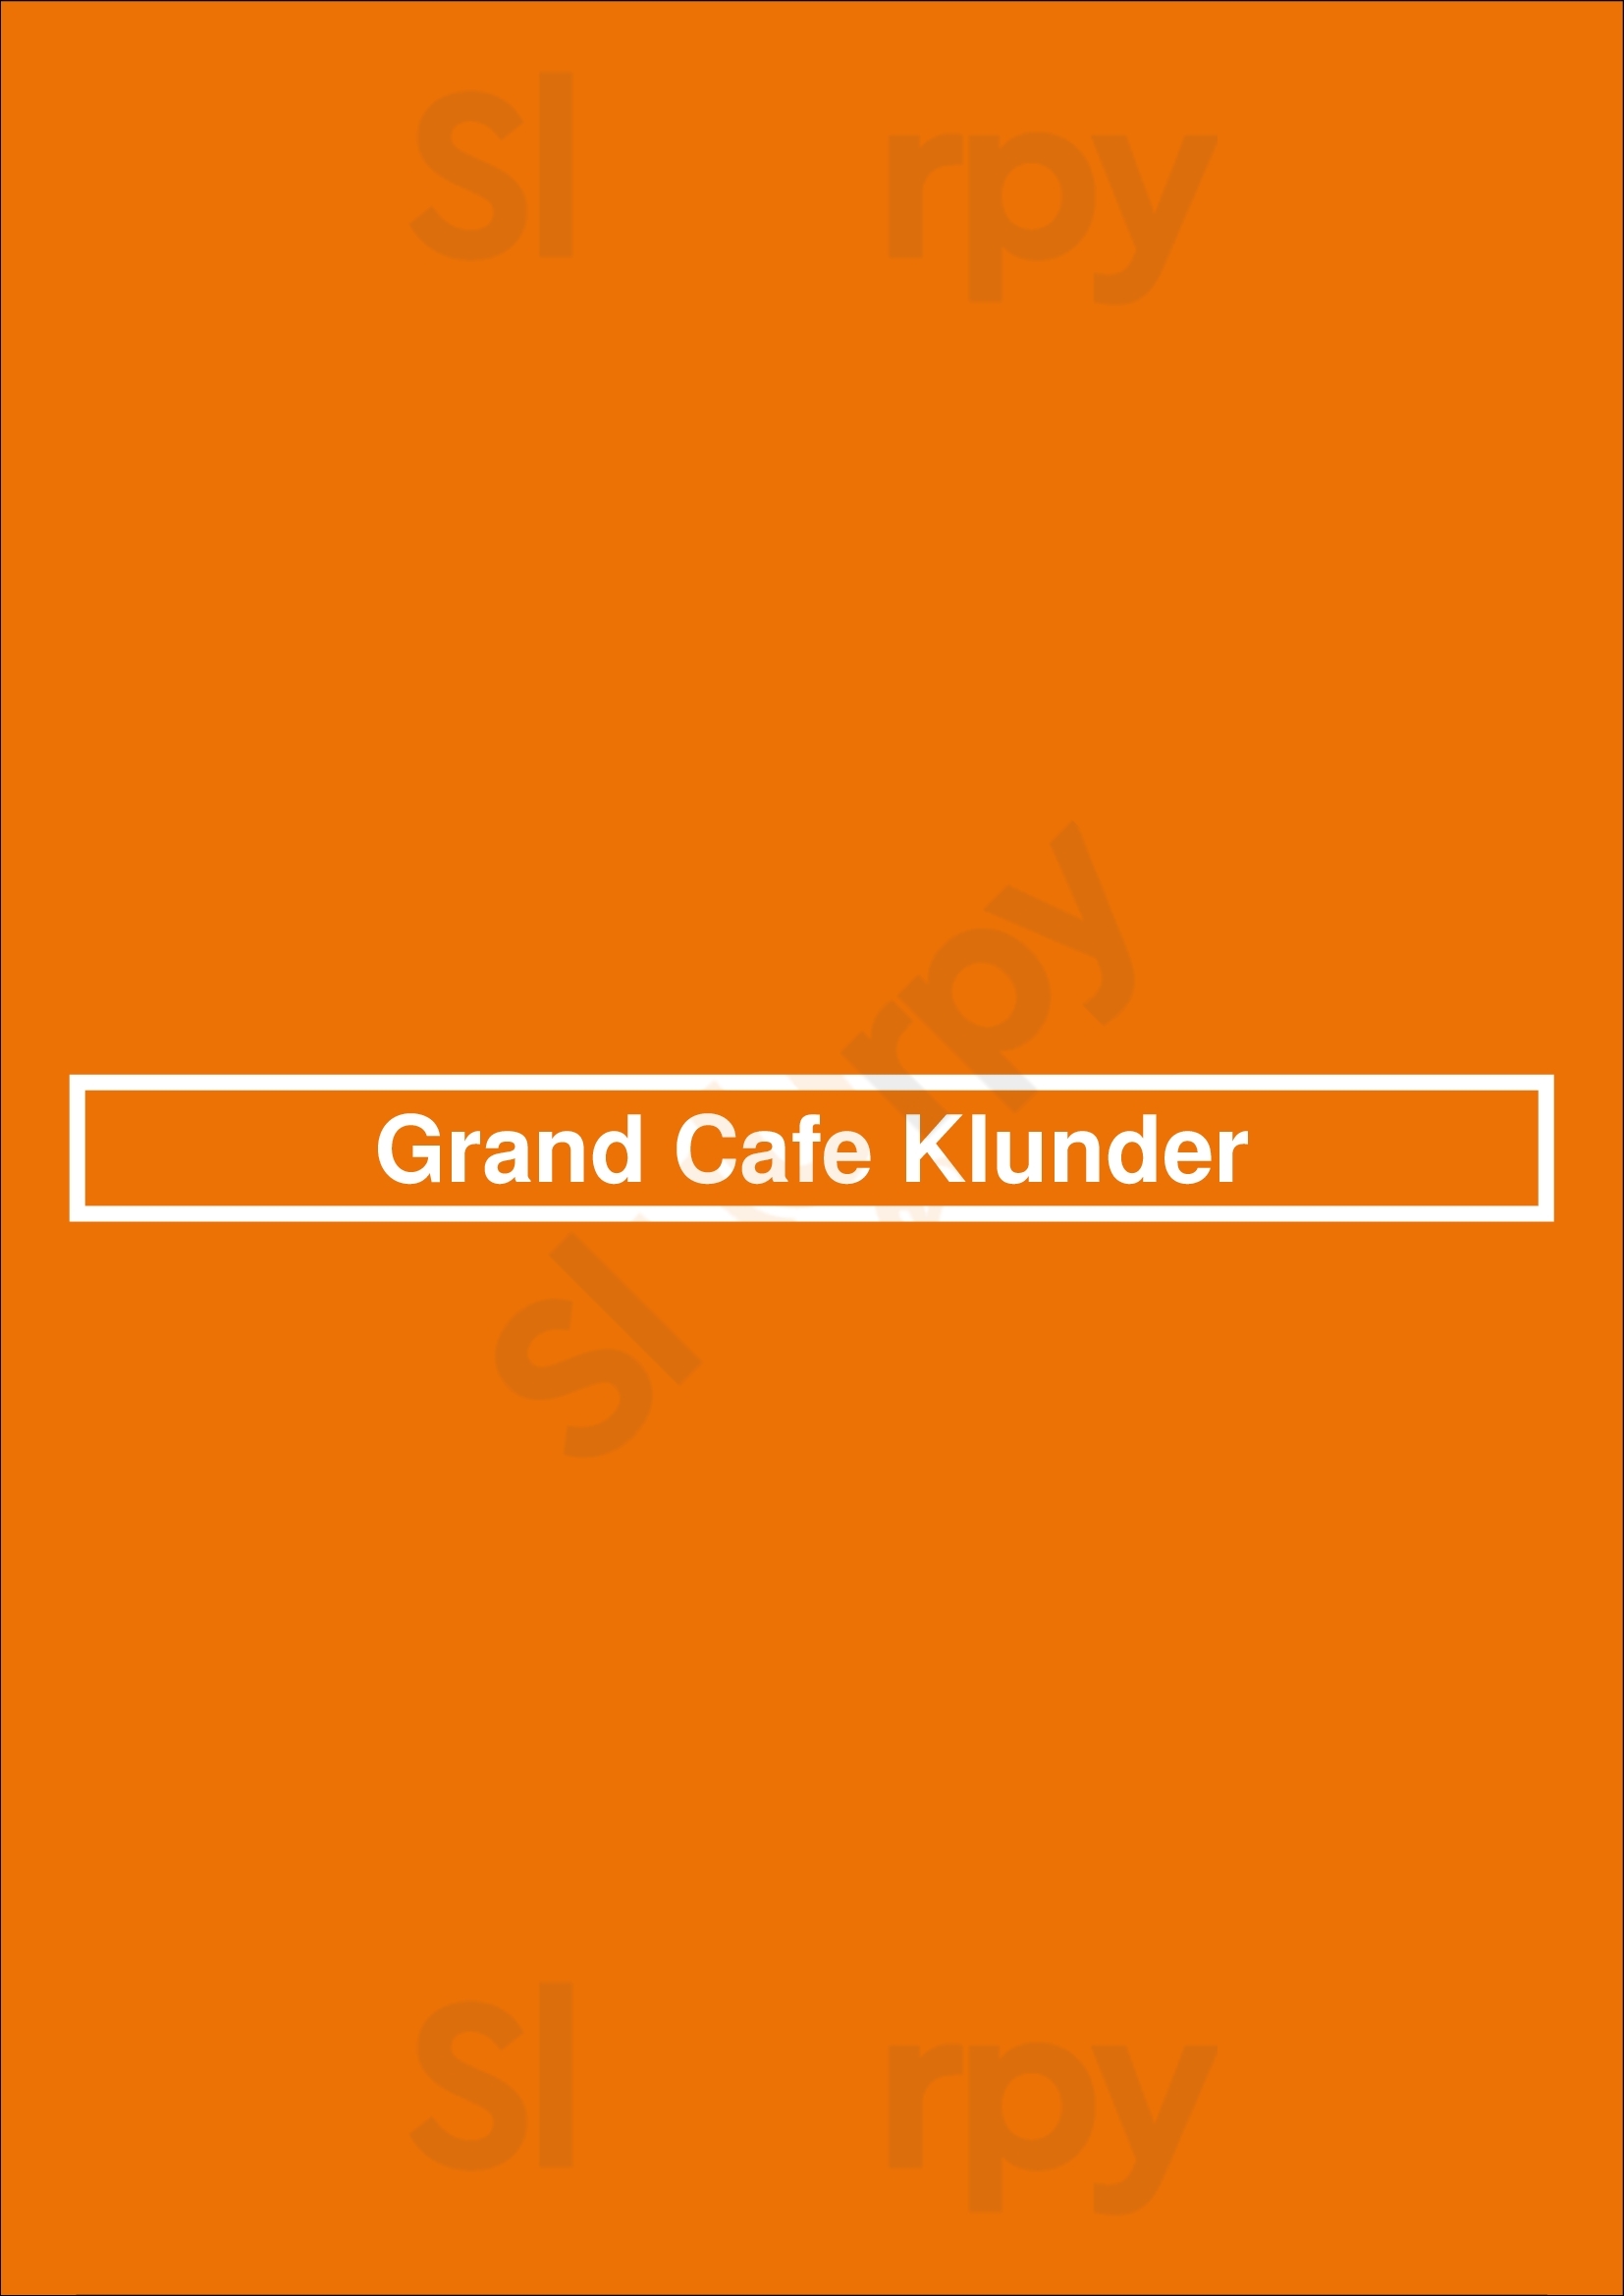 Grand Cafe Klunder Alkmaar Menu - 1